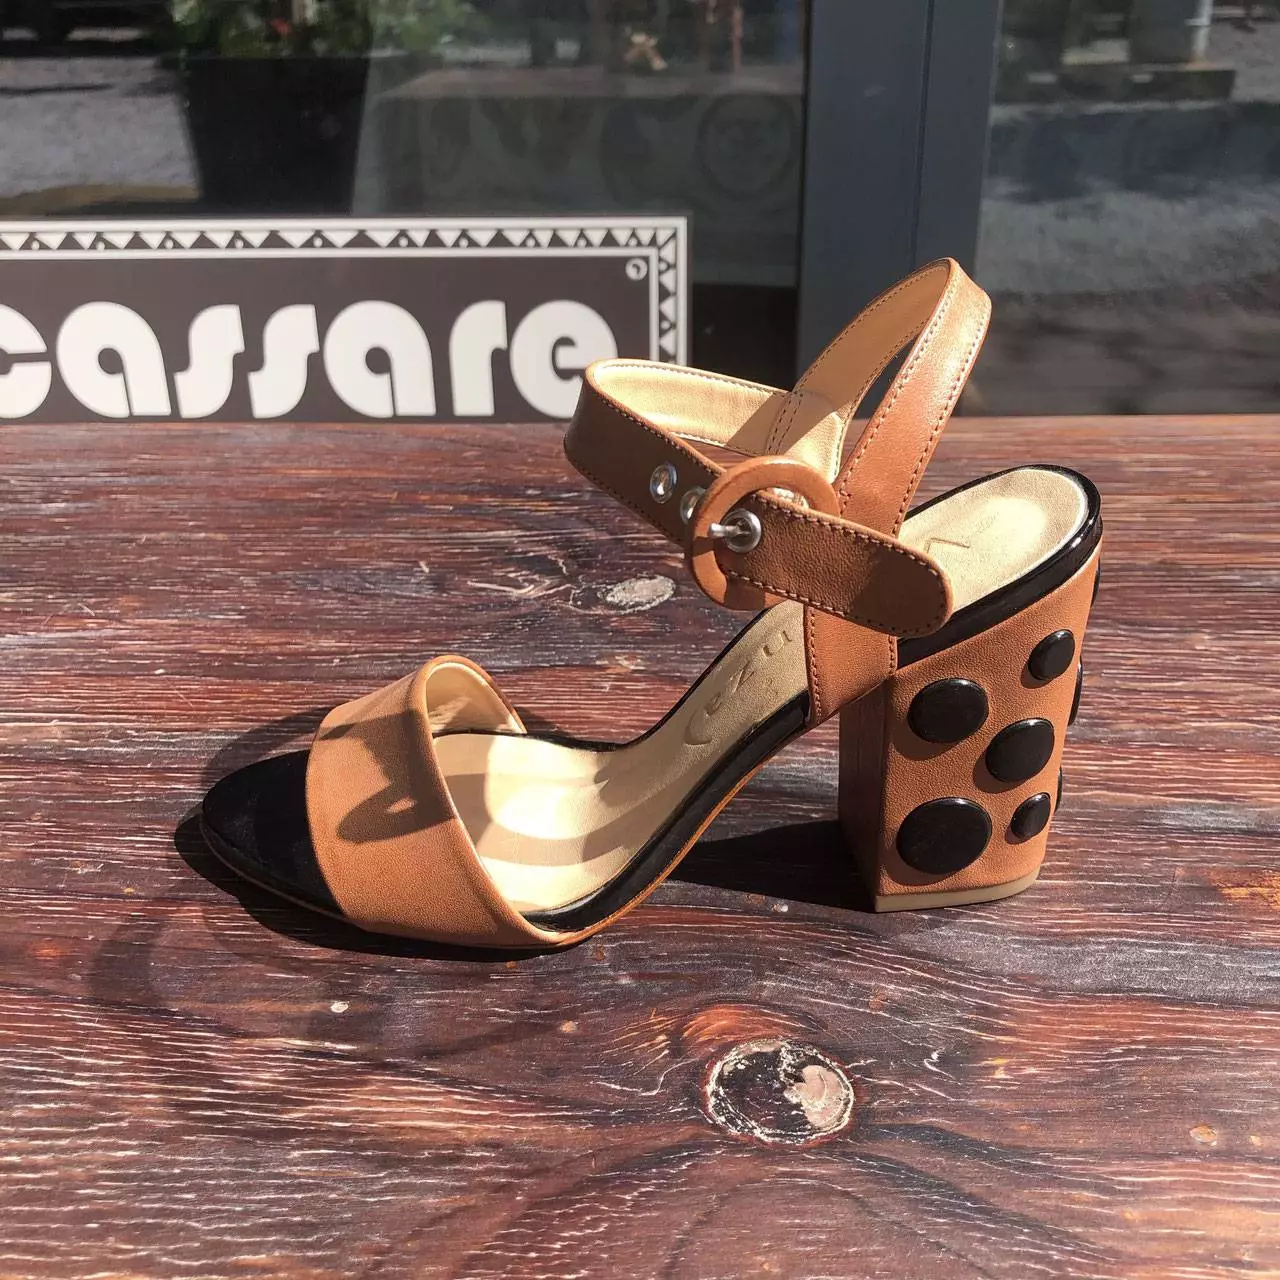 Atanado 4 – Leather Heels Shoes Cassare